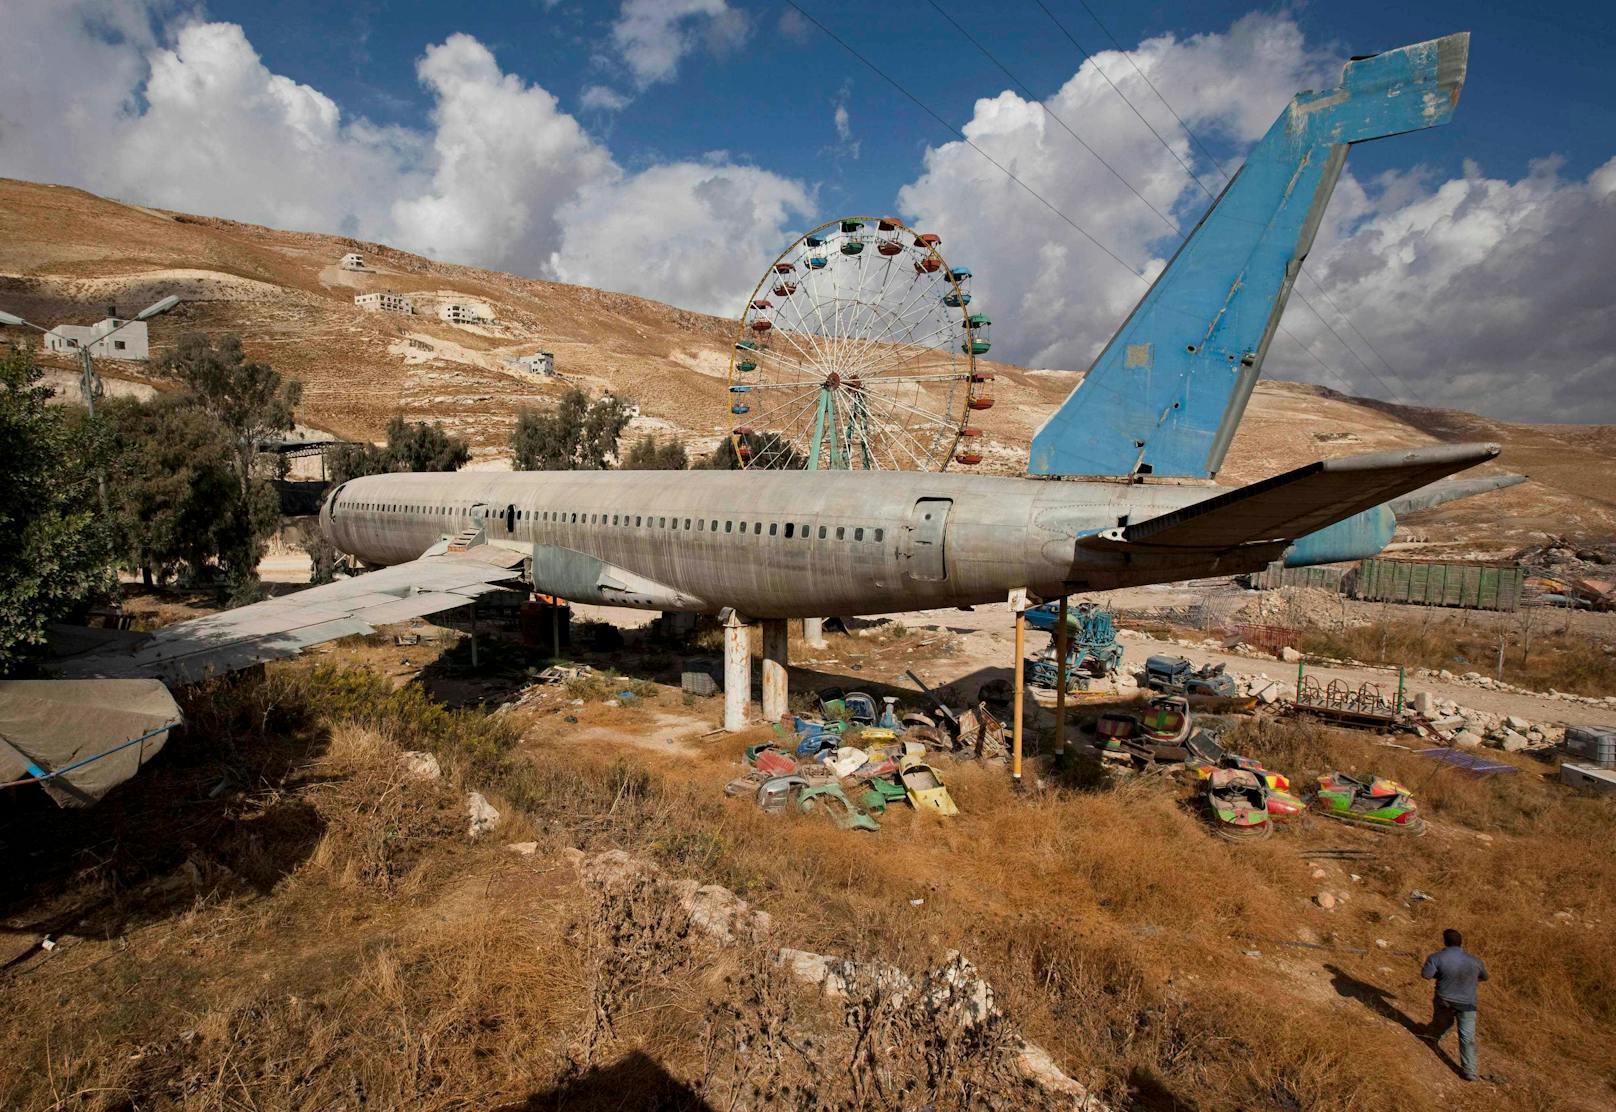 Zwillingsbrüder Ata und Chamis al-Sairafi wurden vor rund 30 Jahren auf die alte Boeing 707 aufmerksam. Jetzt haben sie ihr neues Leben eingehaucht und eröffnen bald das&nbsp;West Bank Airplane Cafe.